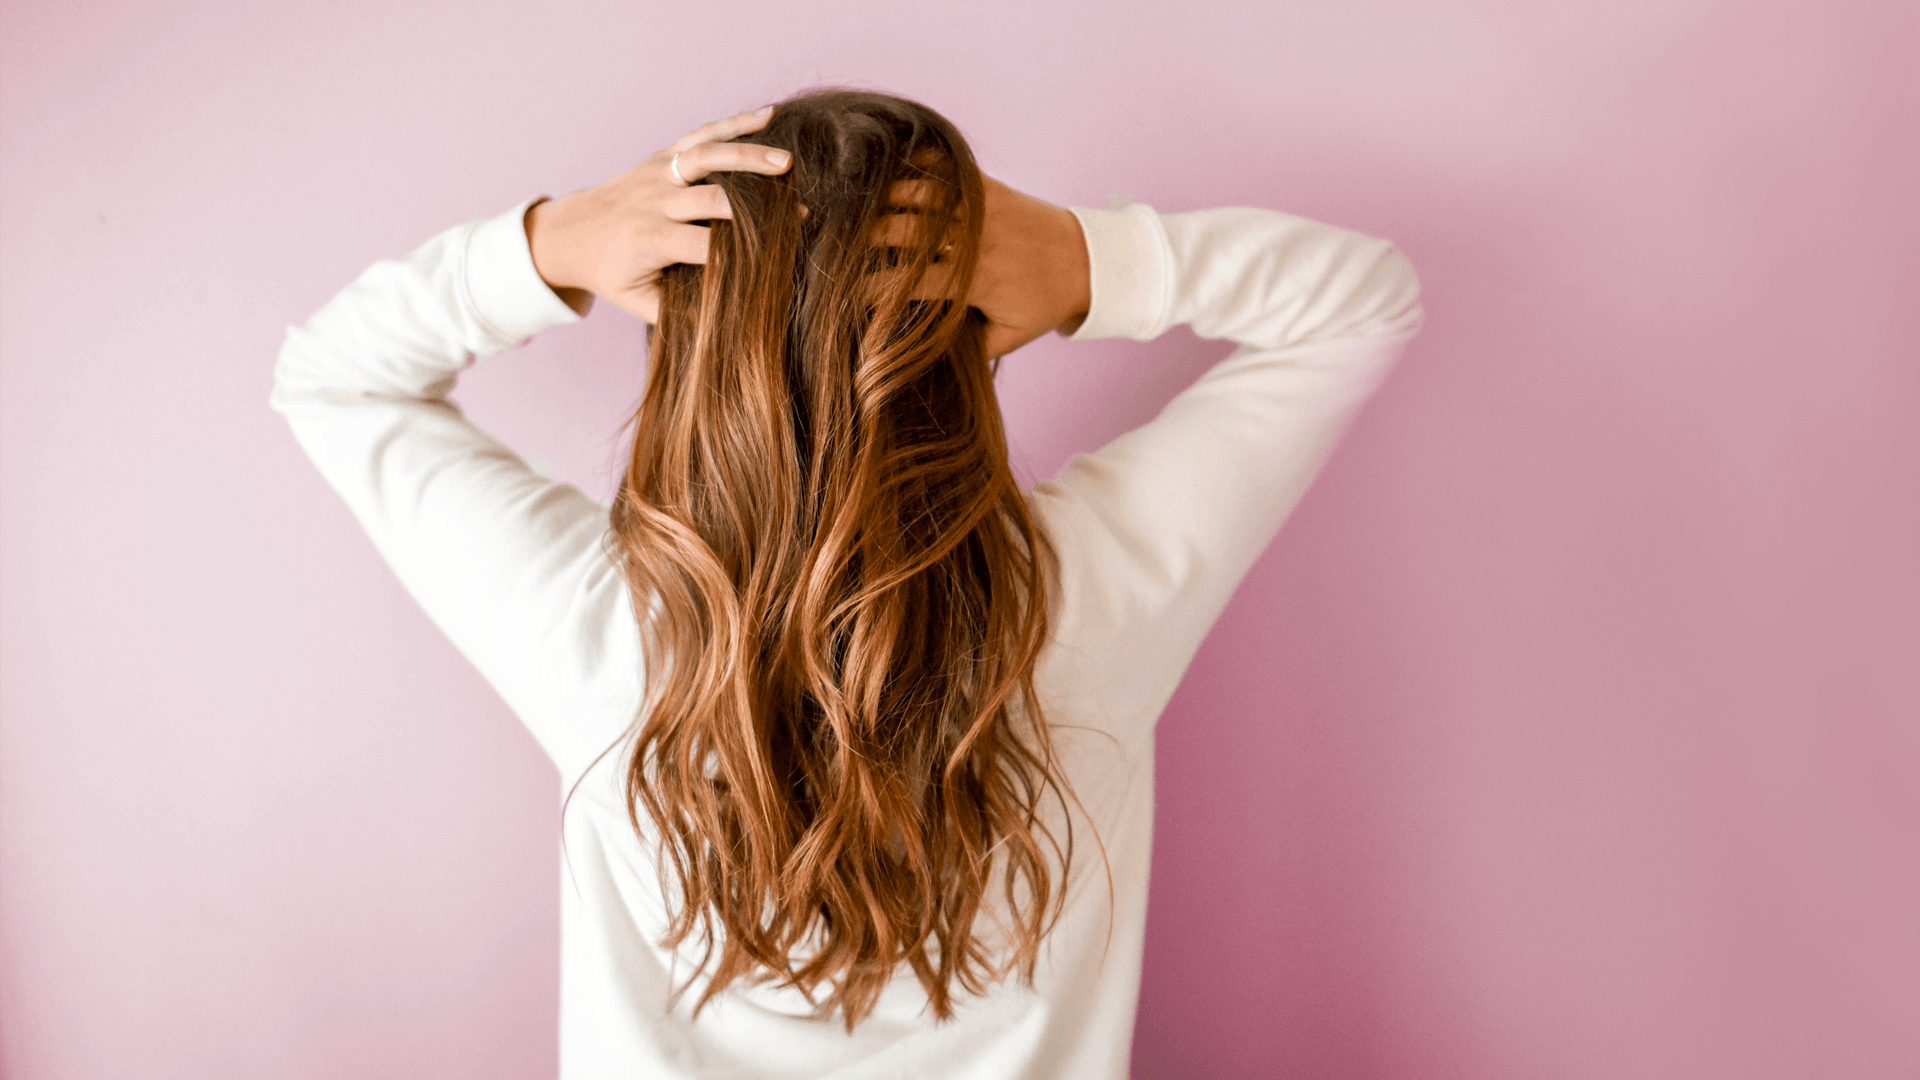 همه آنچه که باید برای مراقبت از مو بدانید: 9 عادت افرادی که موهای سالمی دارند